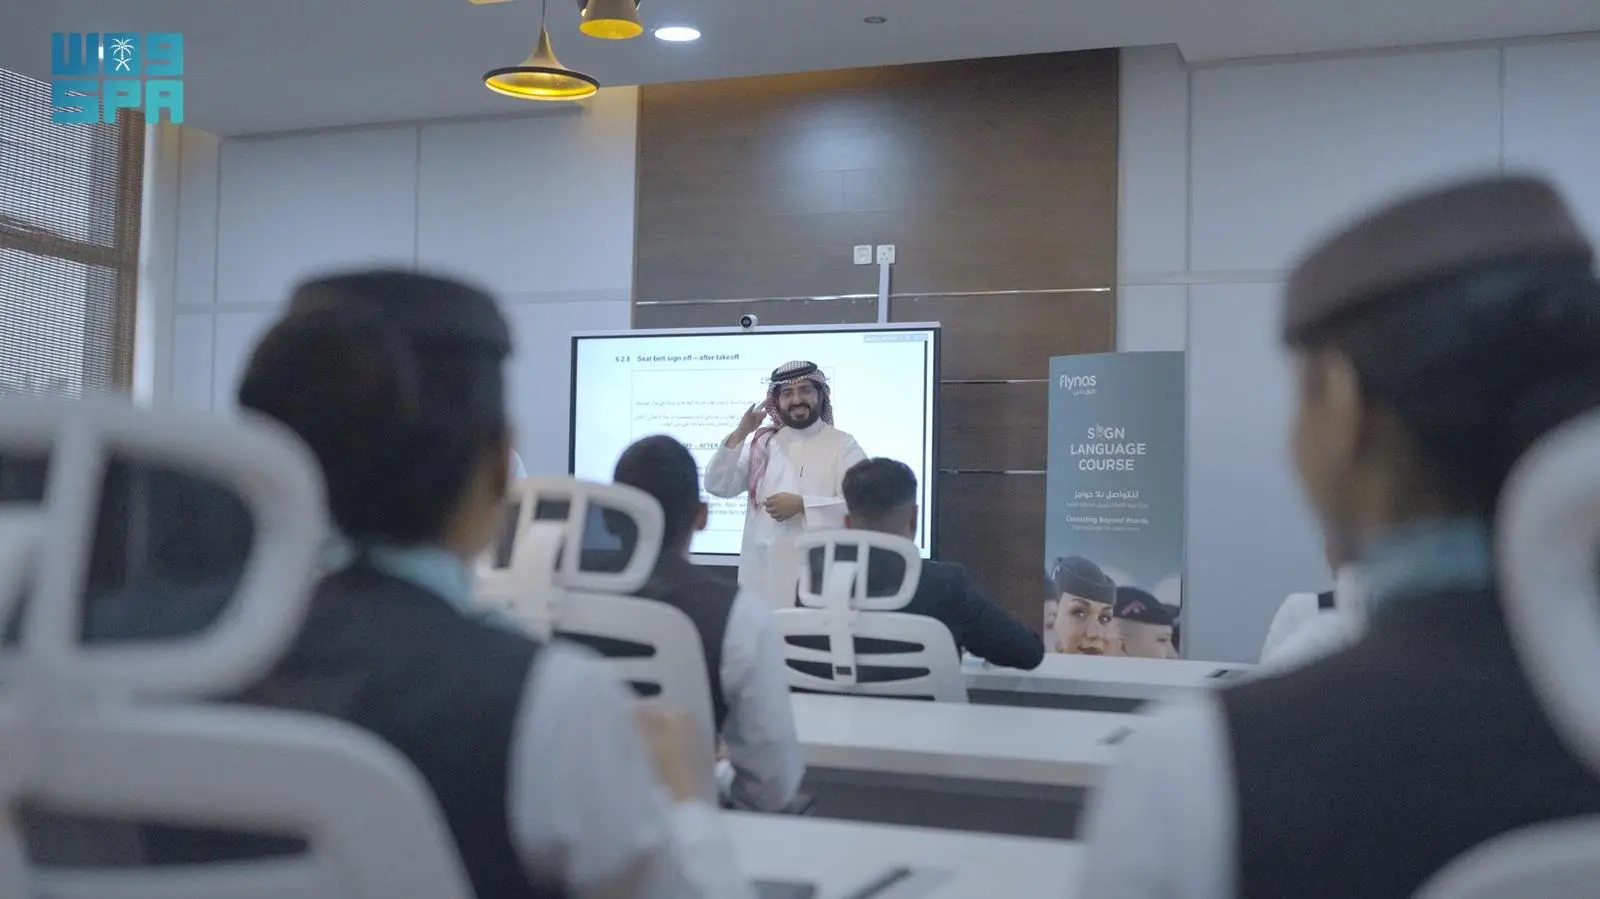 طيران ناس.. يطلق أول برنامج في السعودية لتأهيل طواقم الضيافة الجوية للتواصل بلغة الإشارة